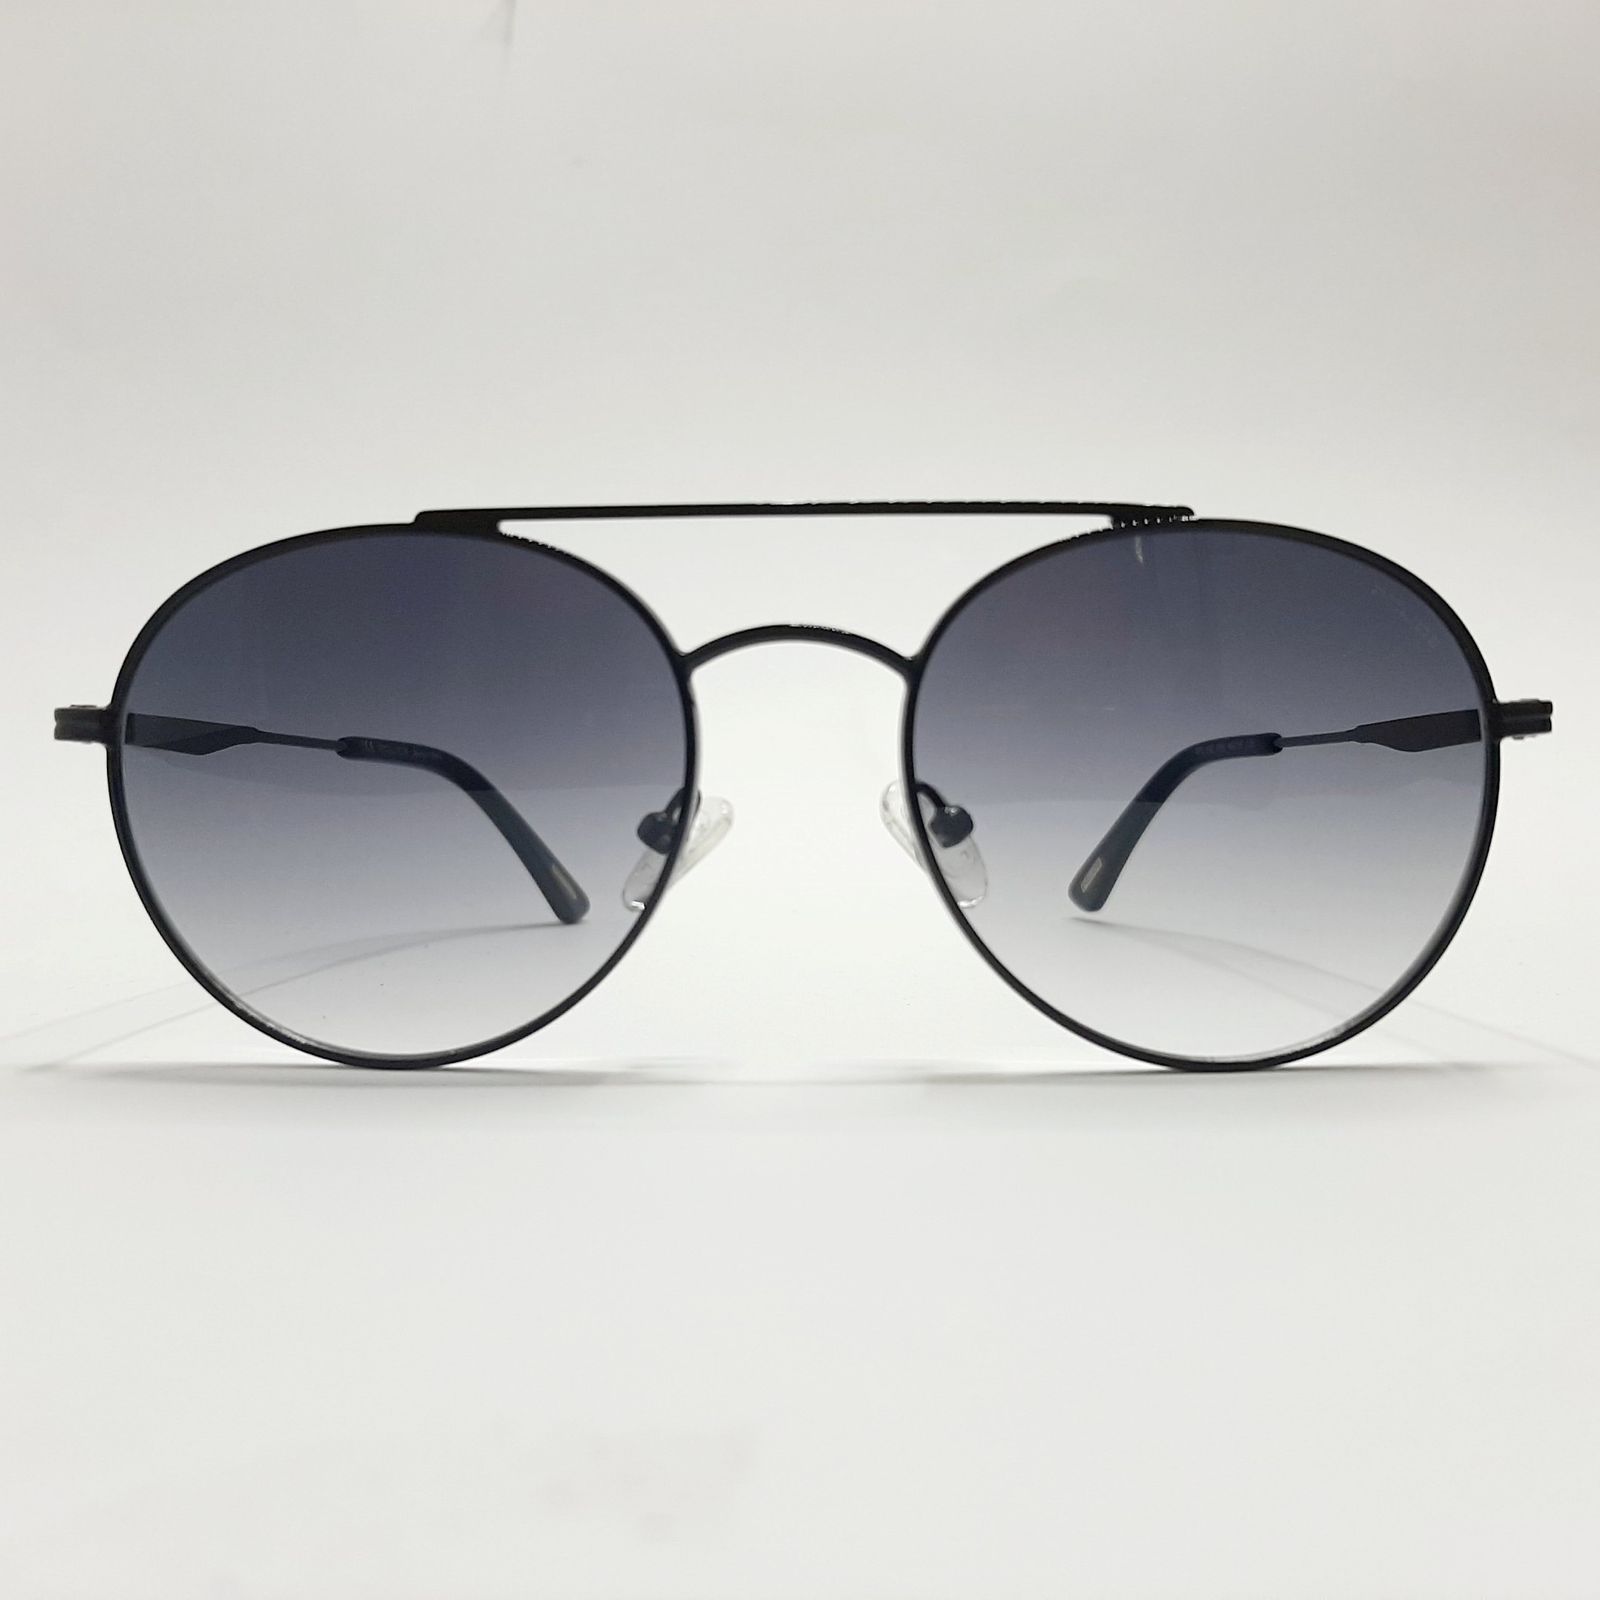 عینک آفتابی پلیس مدل SPL602c6 -  - 3